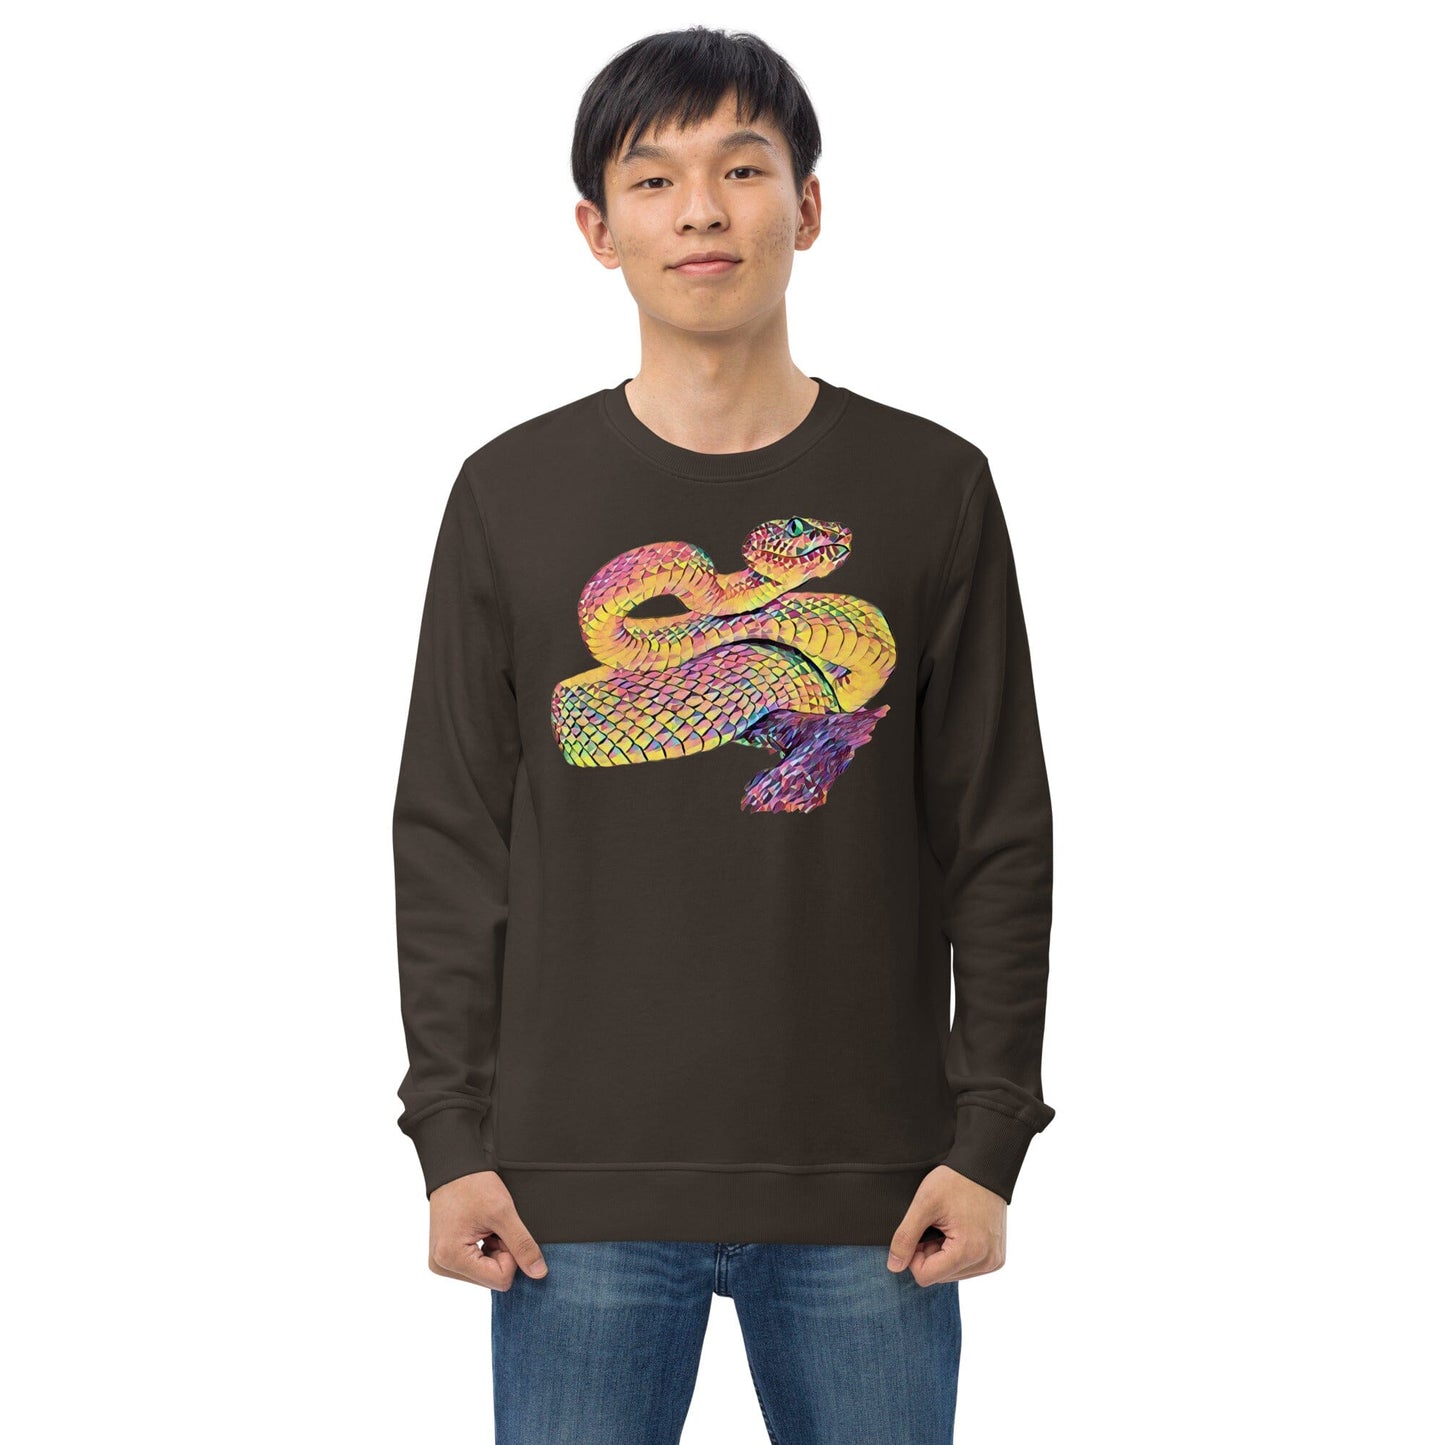 Snake Unisex Organic Sweatshirt JoyousJoyfulJoyness 